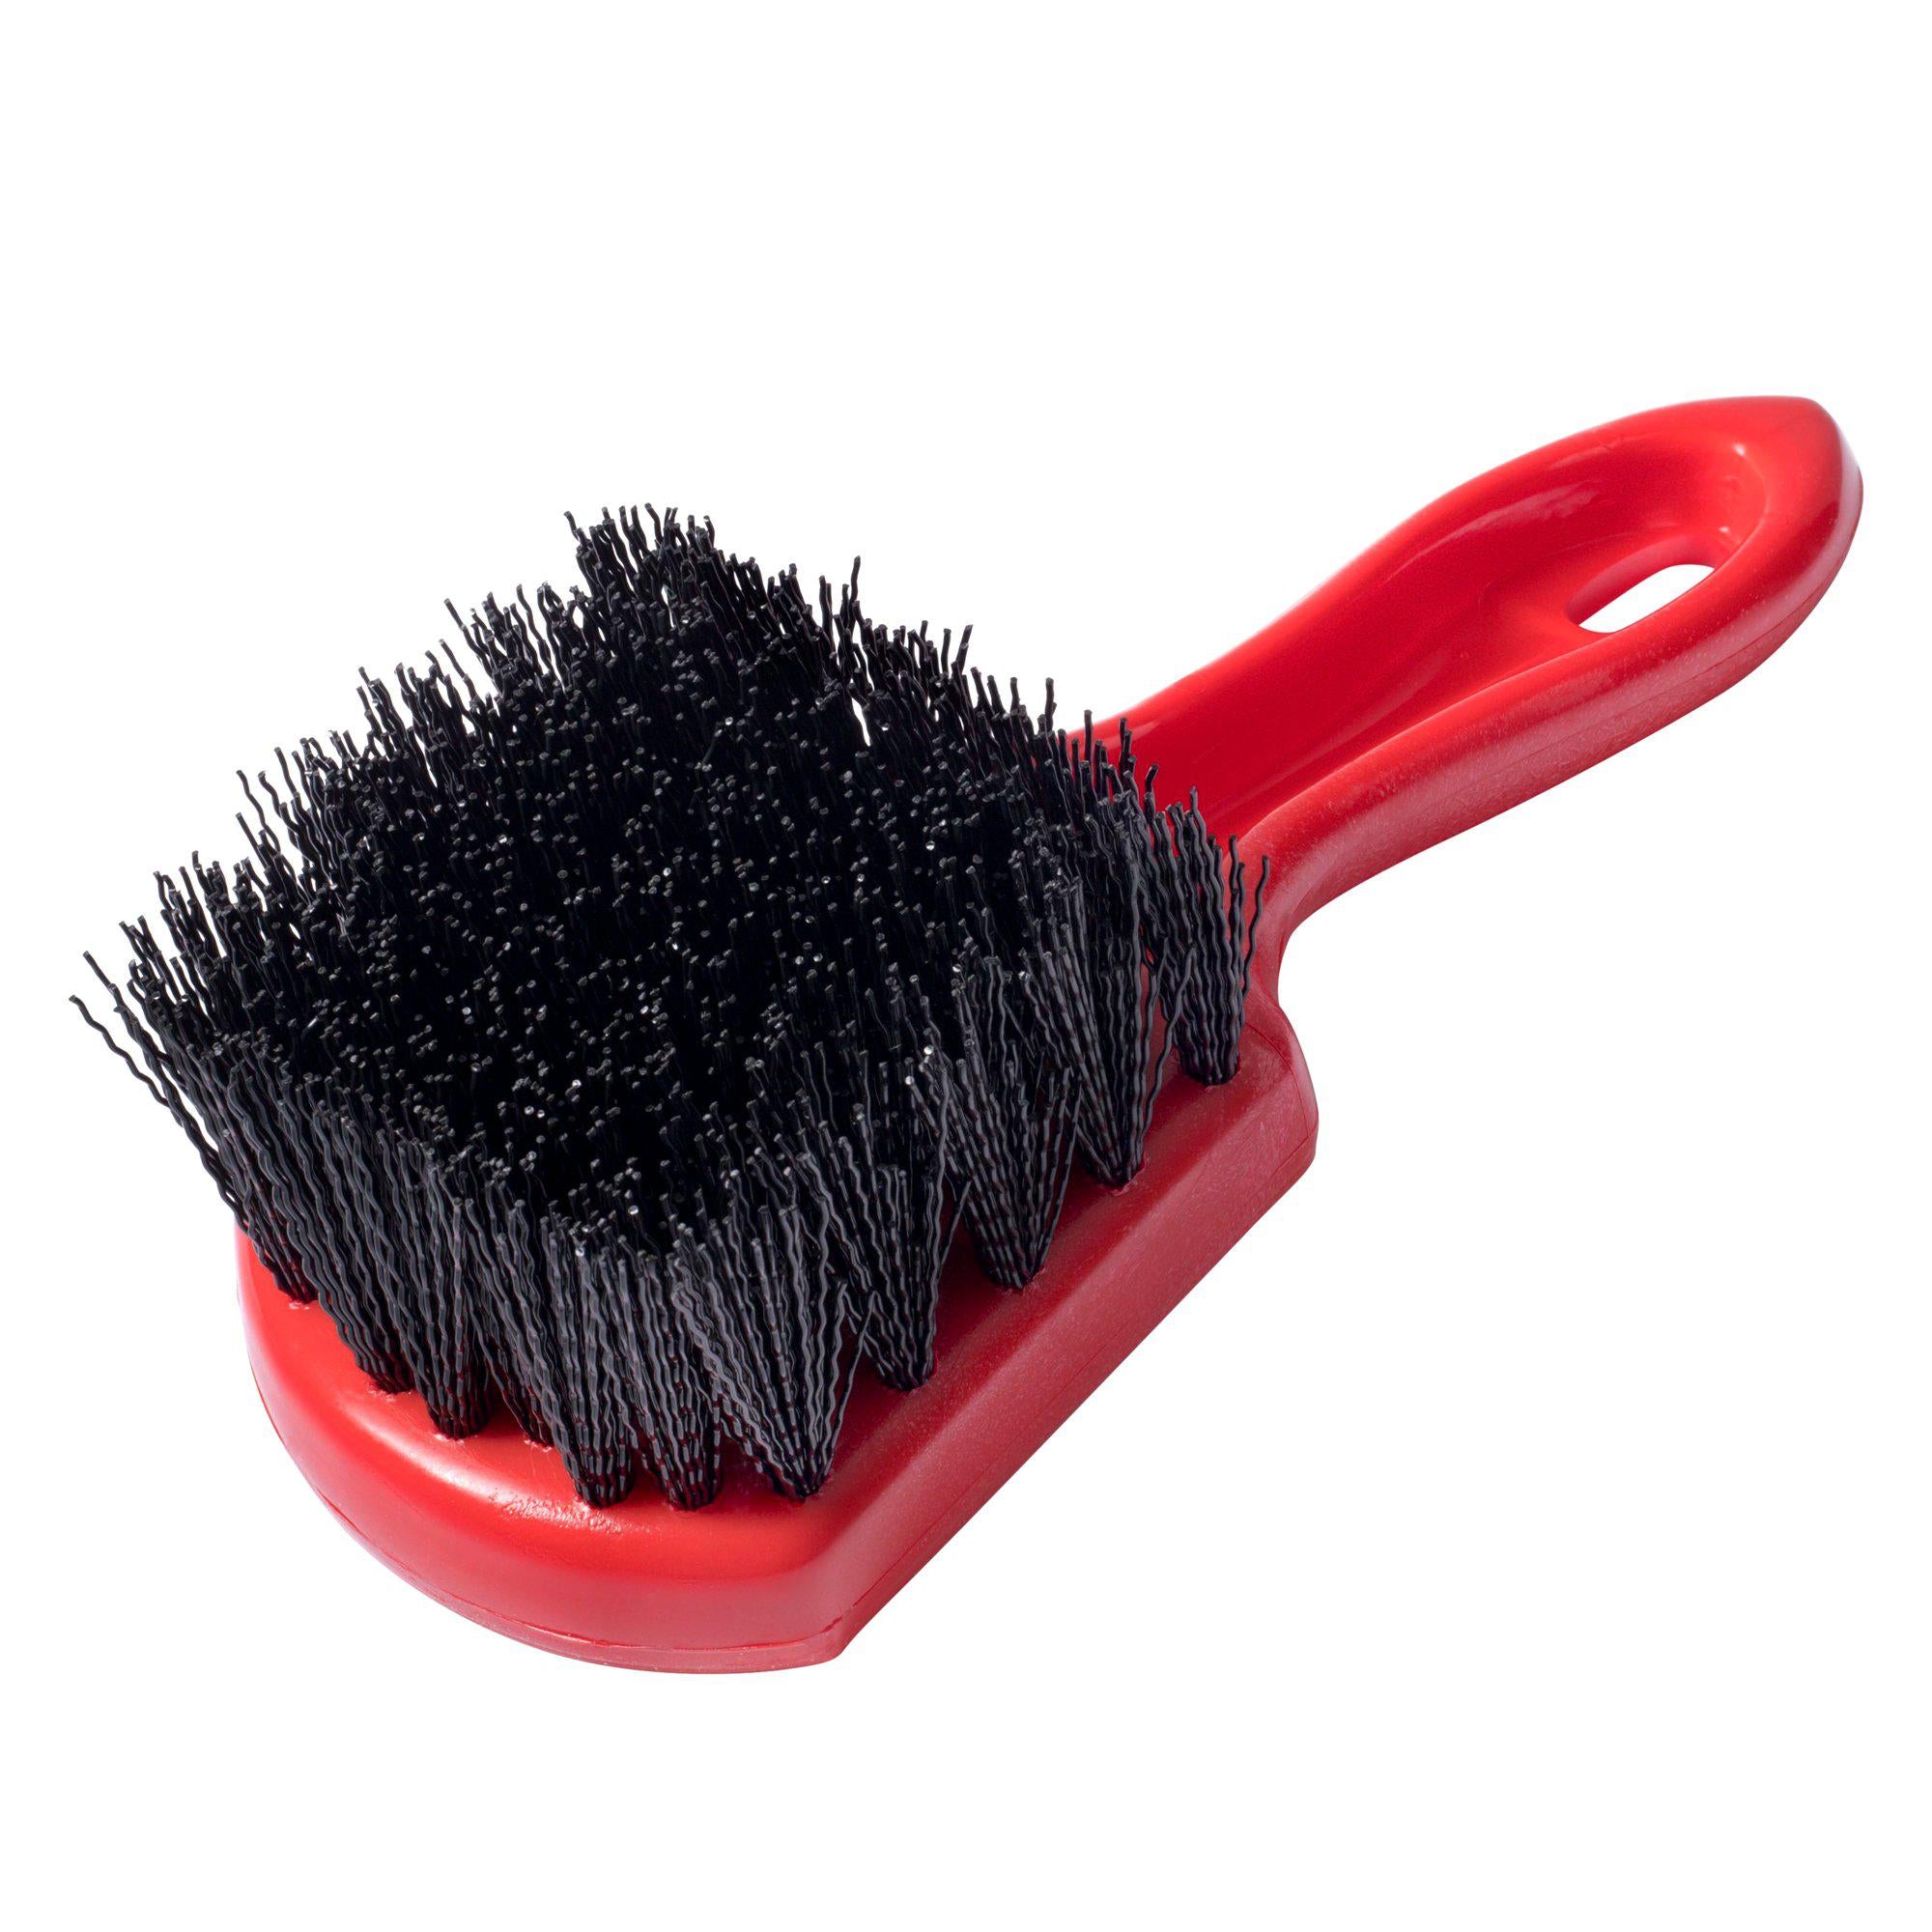 Cepillo de manos y uñas. Doble cara de las cerdas, húmeda o seca, fácil de  sujetar, otros cepillos, Fuller Brush Company.